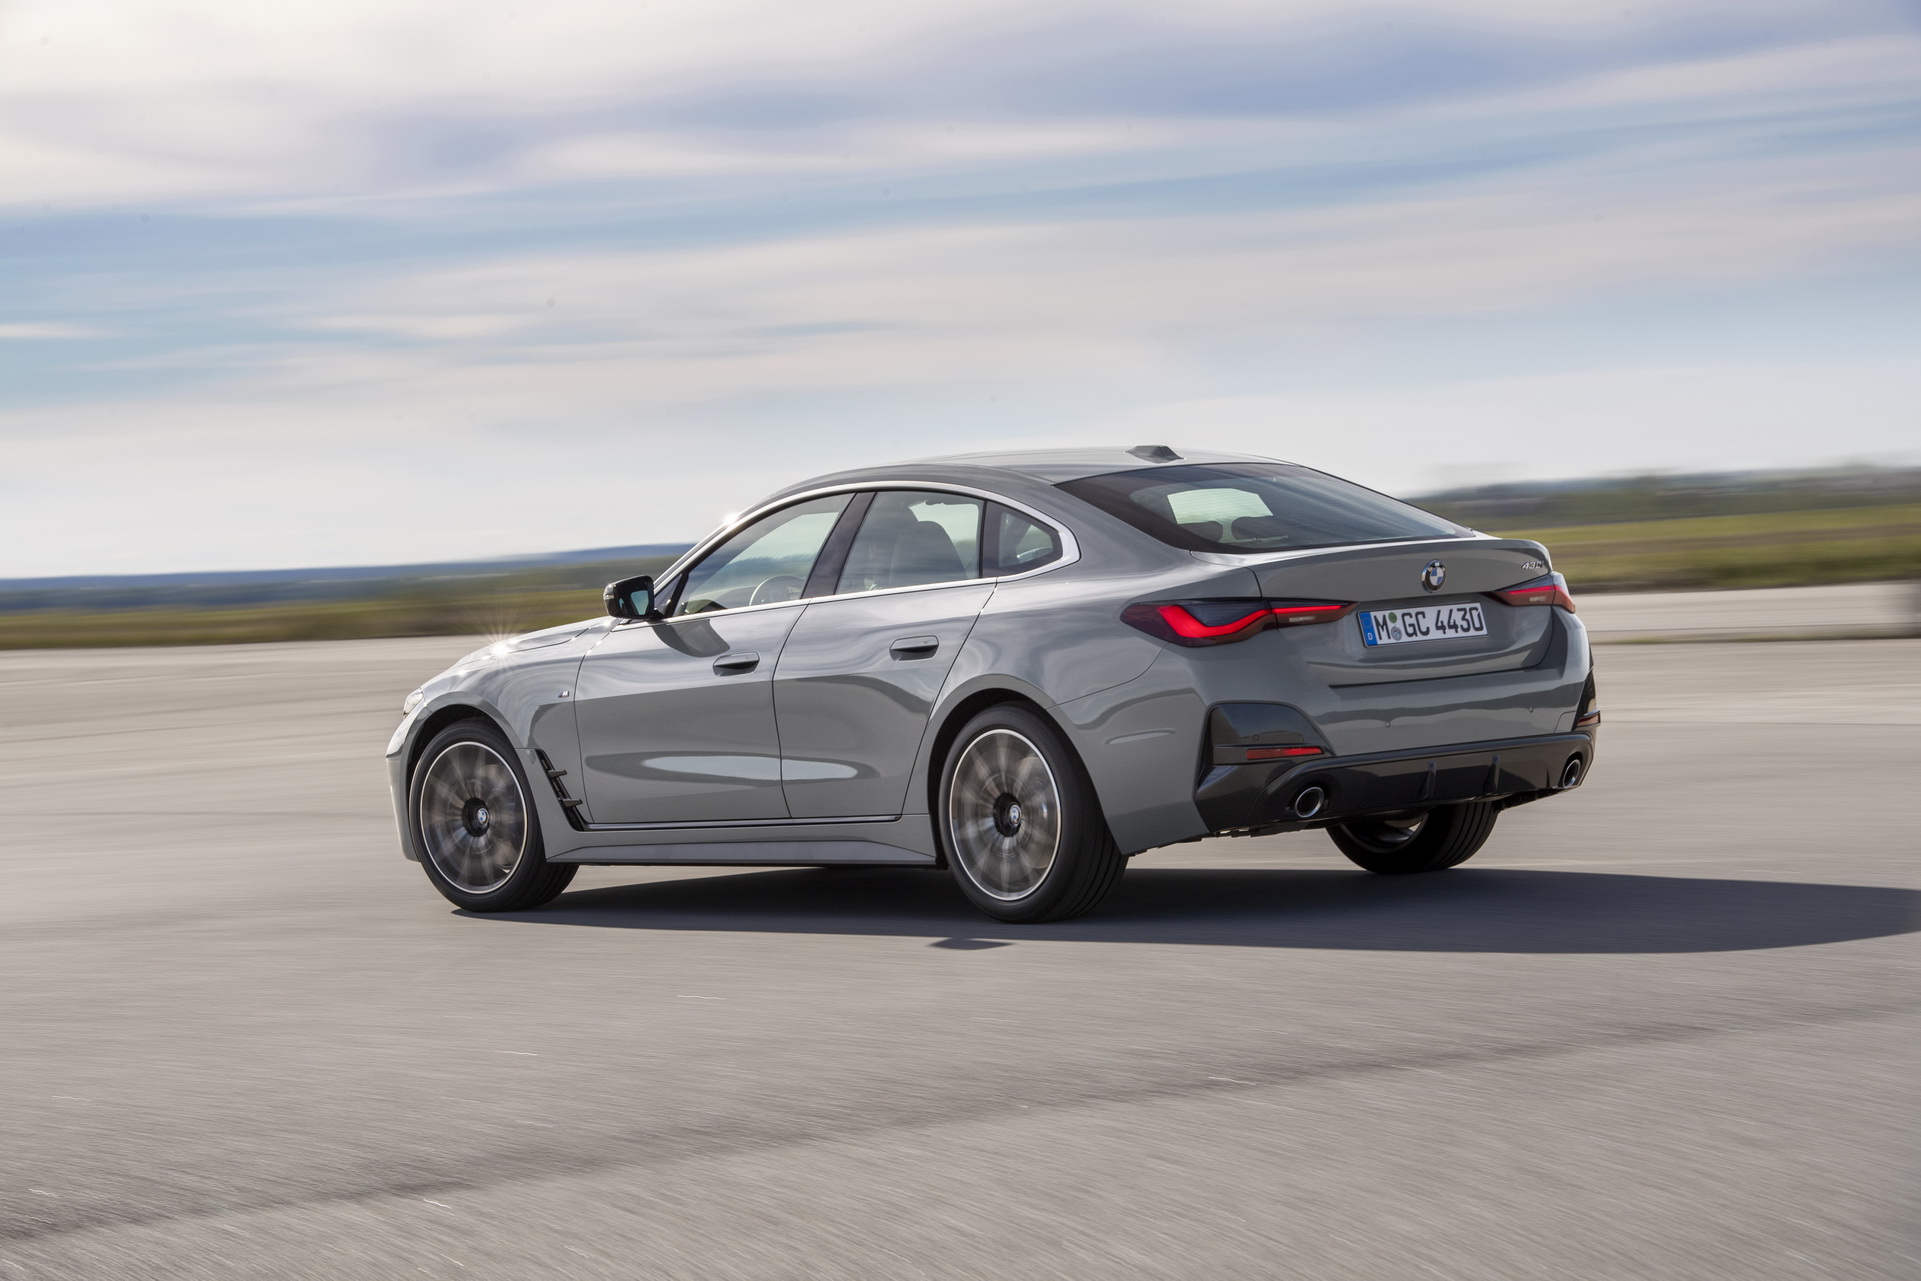 2021 BMW 4 Serisi Gran Coupe, yeni tasarım ve teknolojilerle geldi